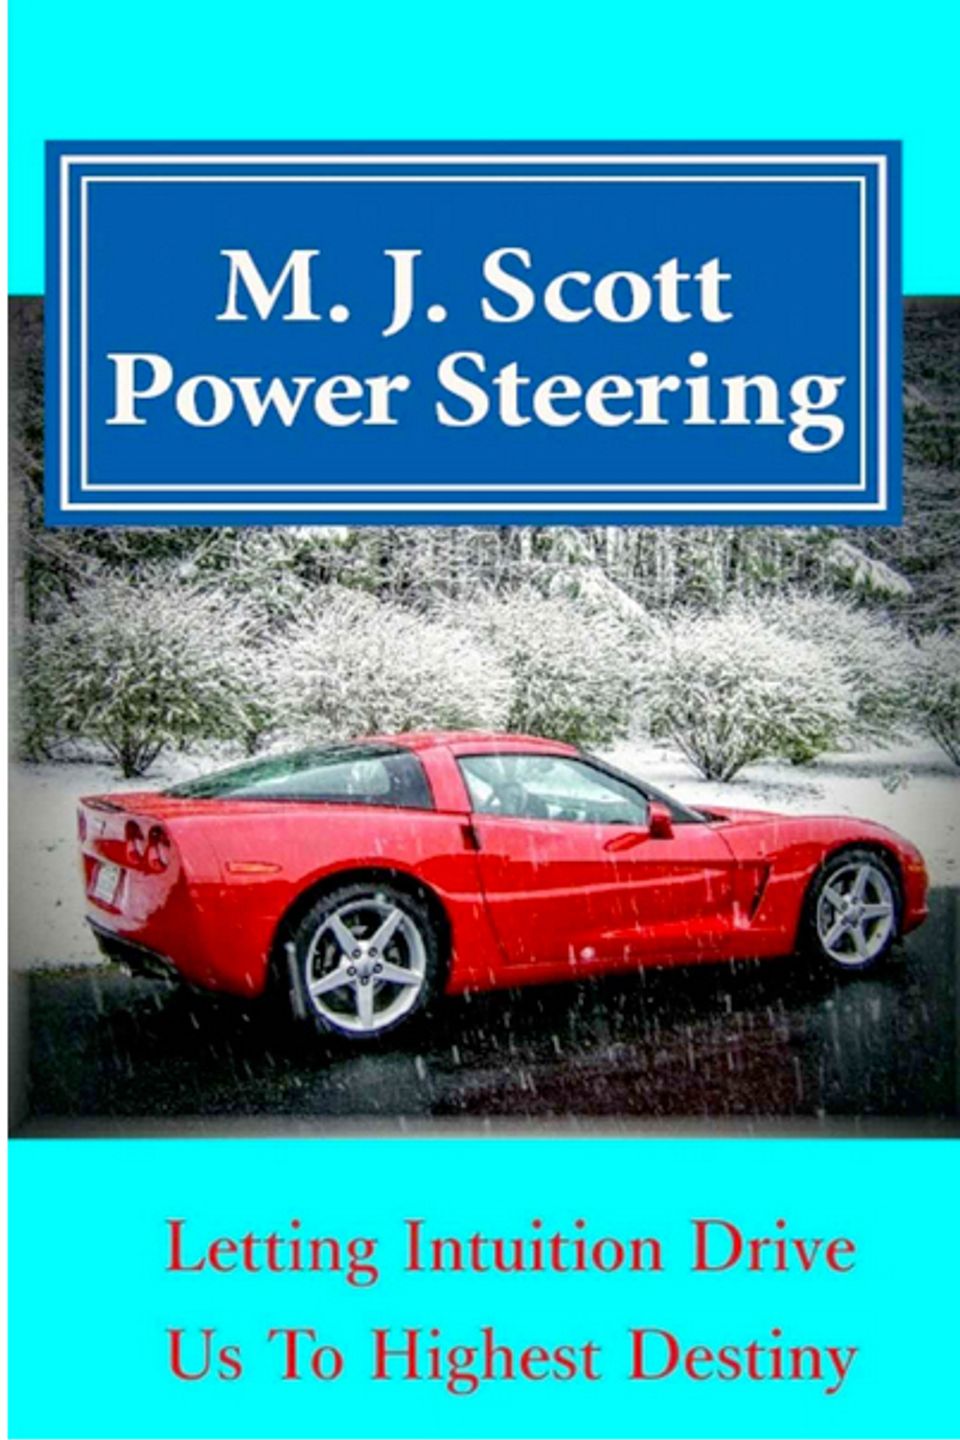 Power steering mj scott20160703 17540 1lni0oe